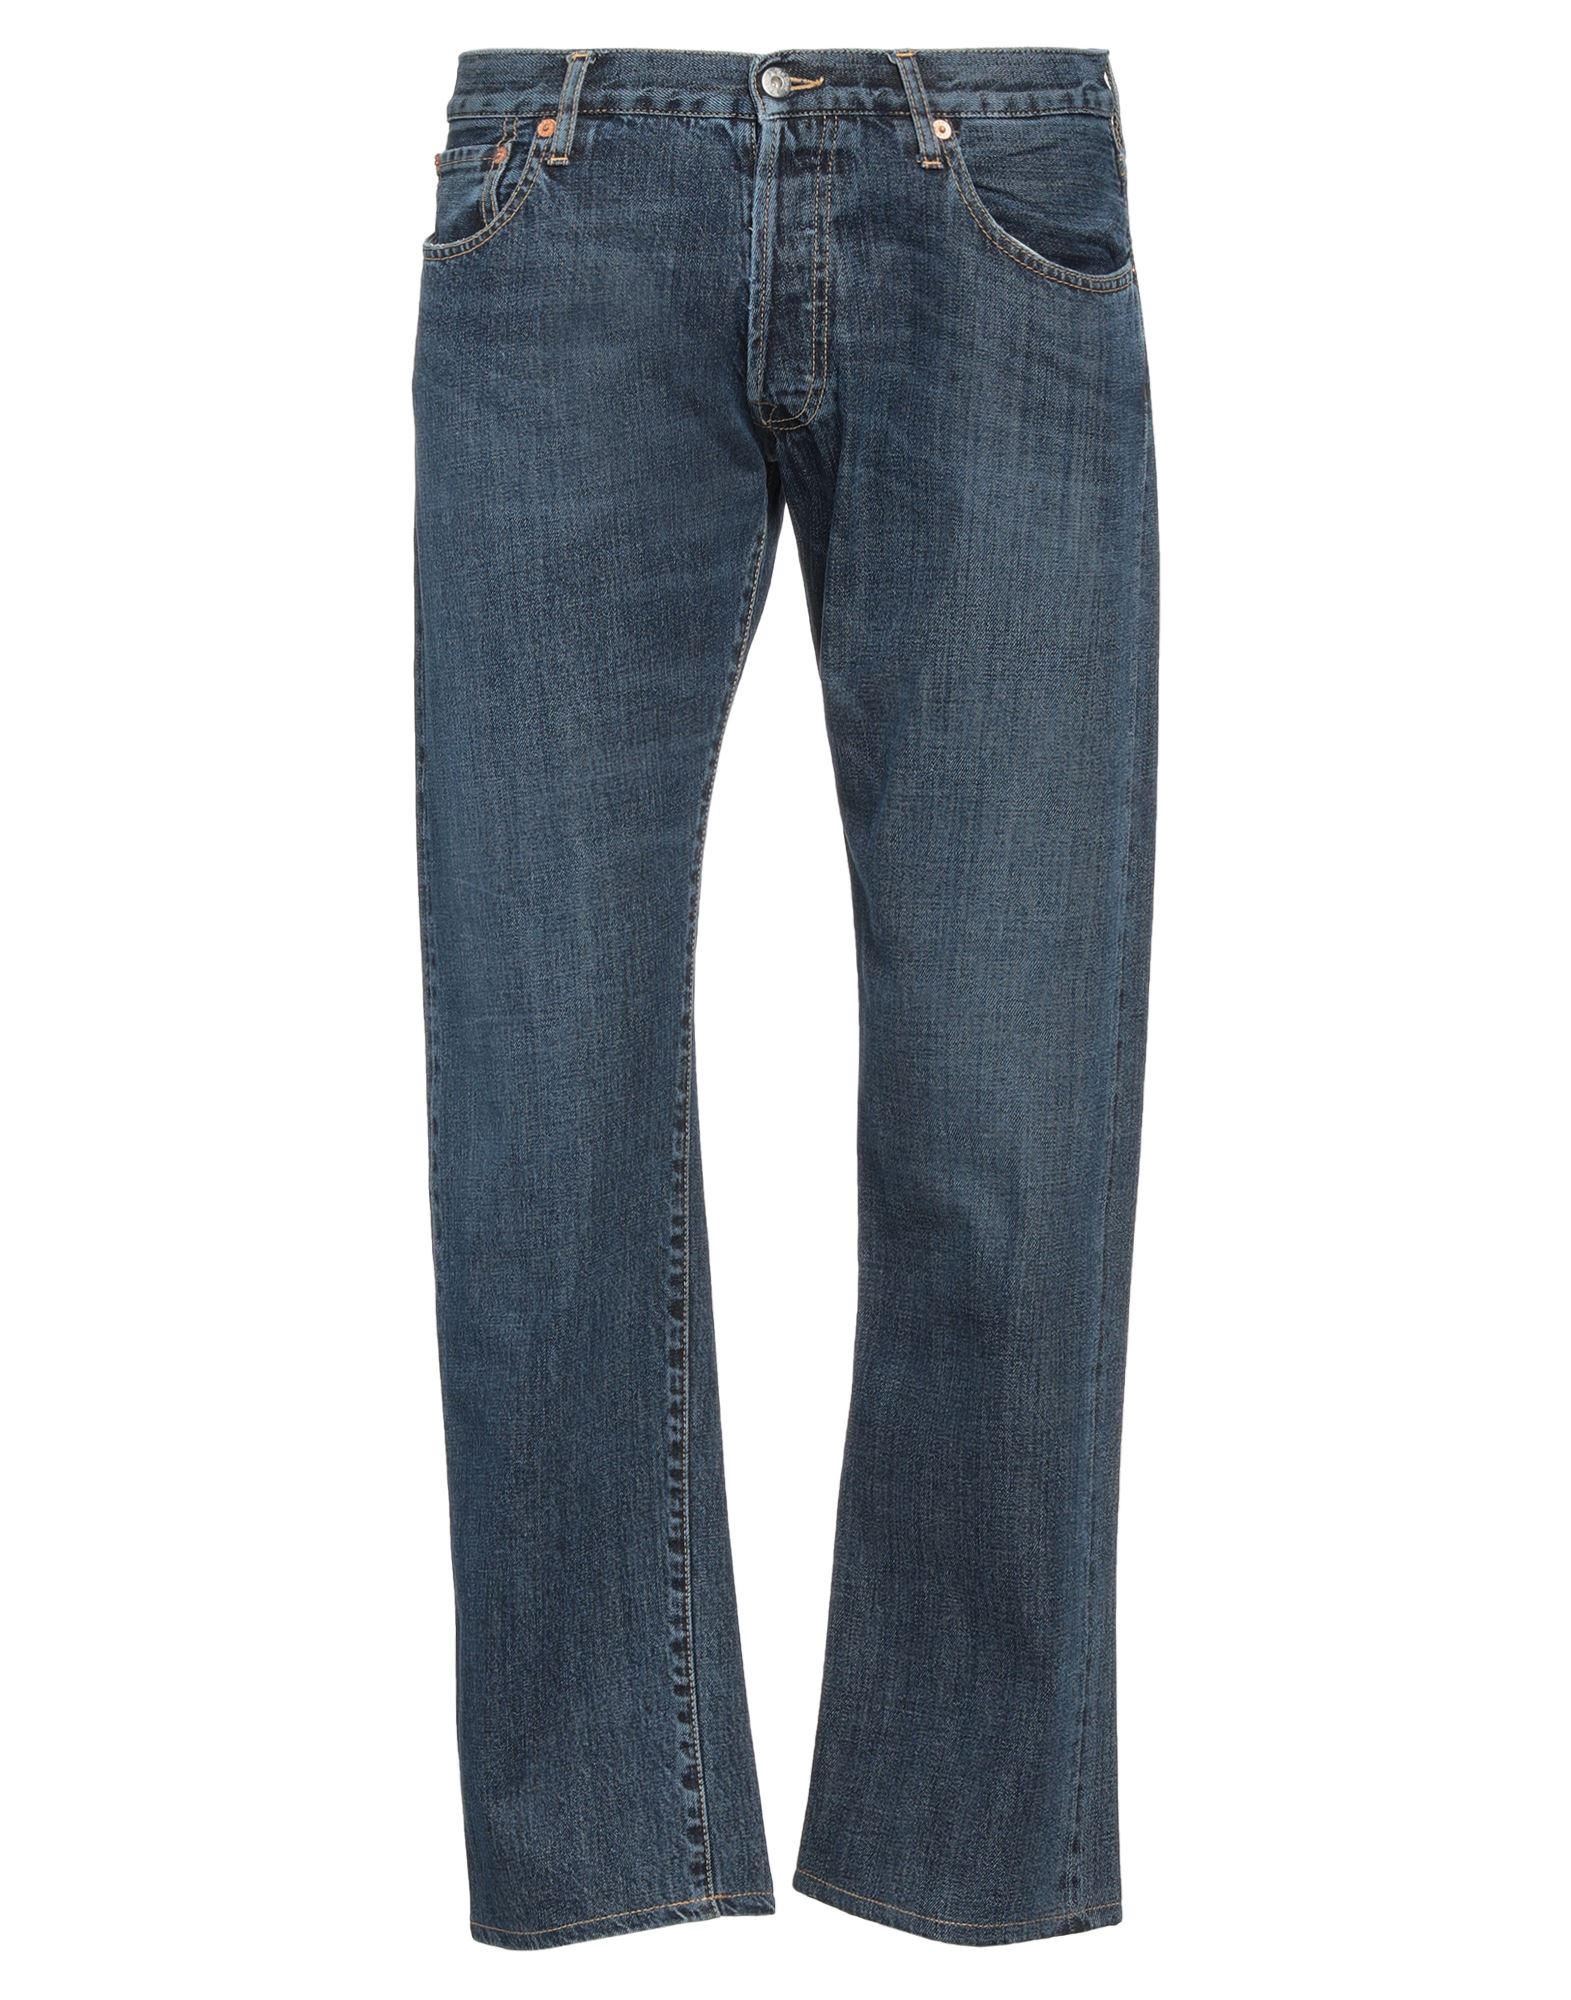 Shop Ten Dnm Man Jeans Blue Size 31 Cotton, Soft Leather